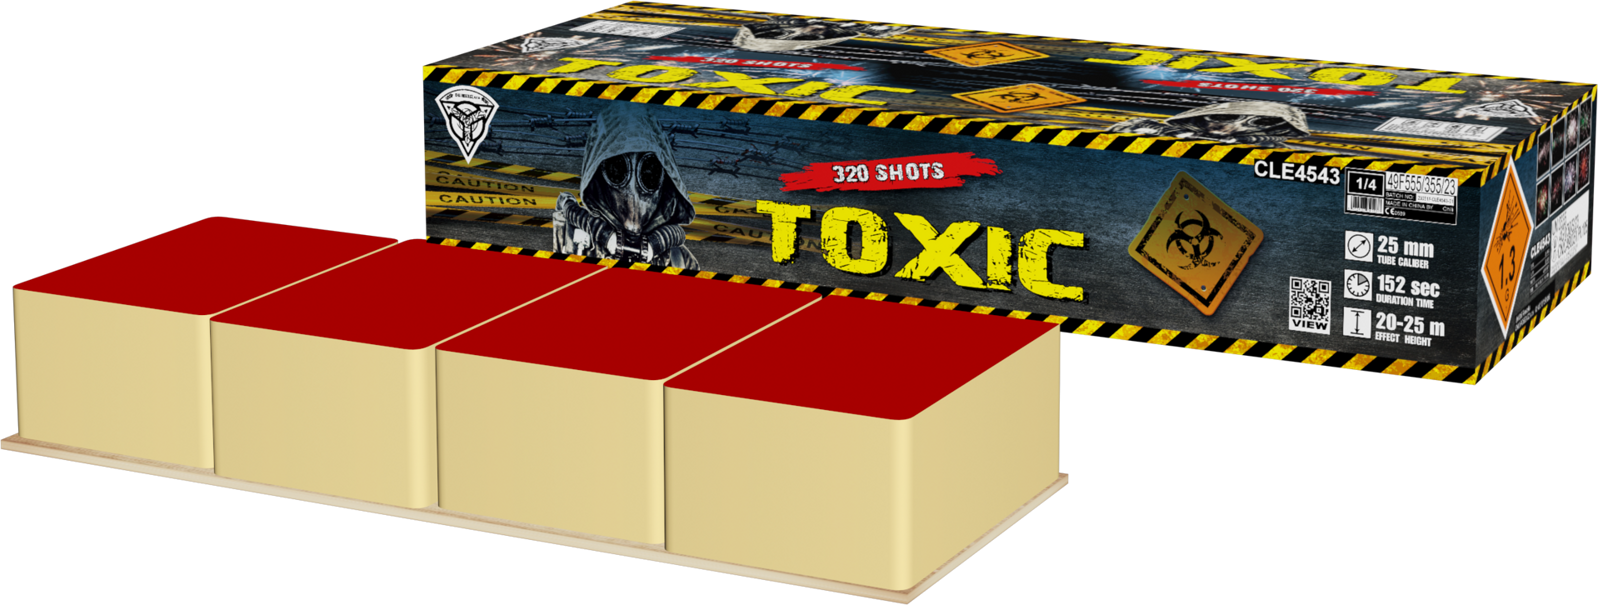 Toxic 320ran (3:30 min)